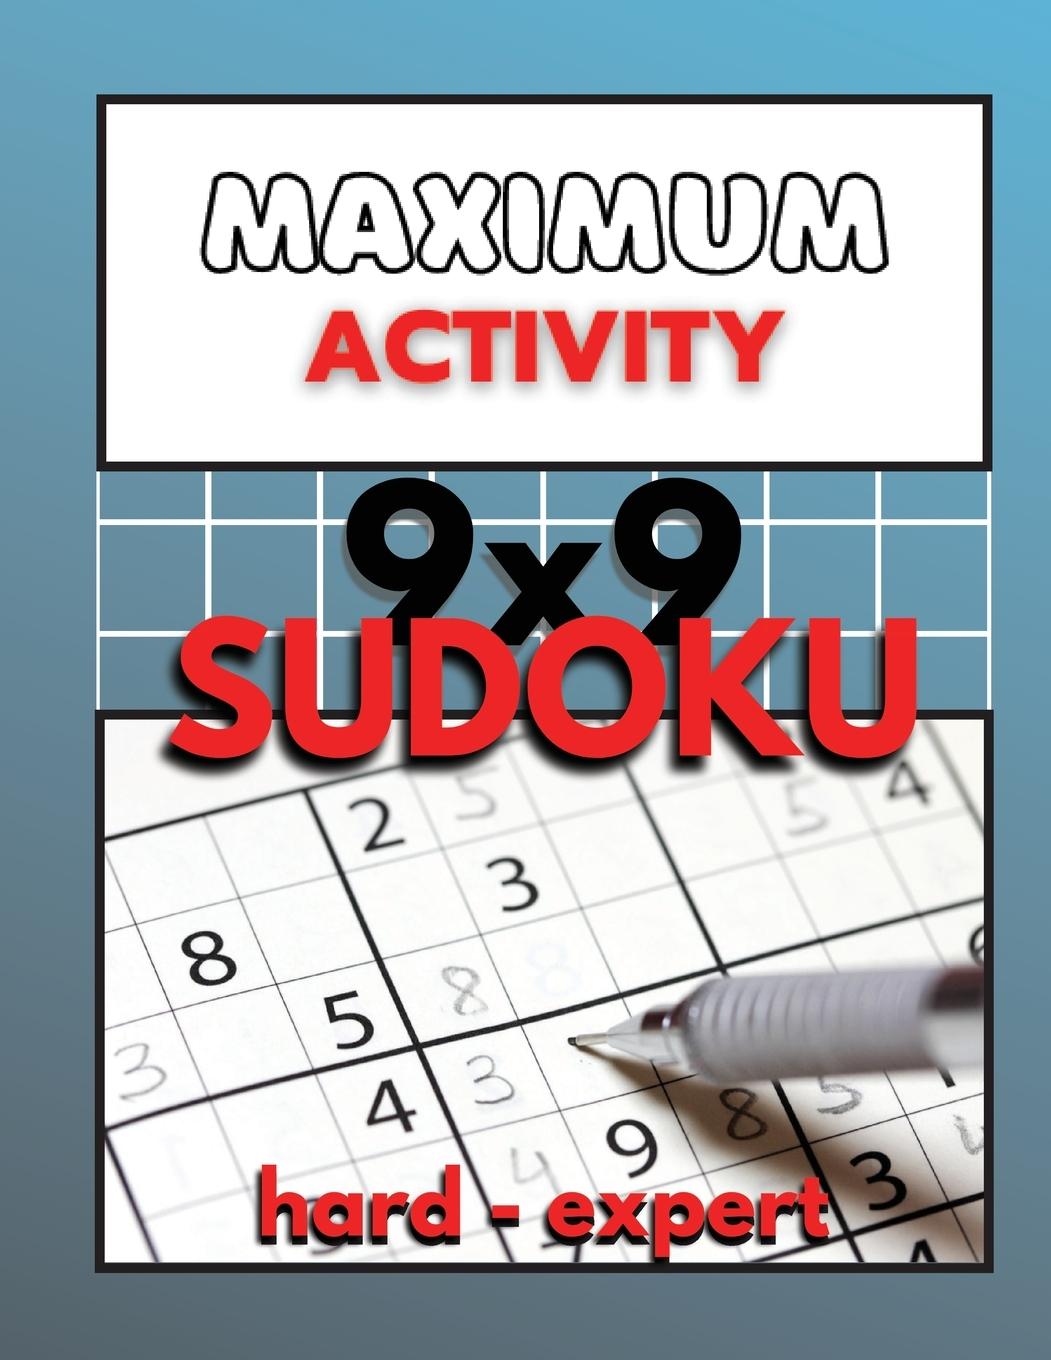 Carte Maximum Activity 9x9 Sudoku hard to expert 